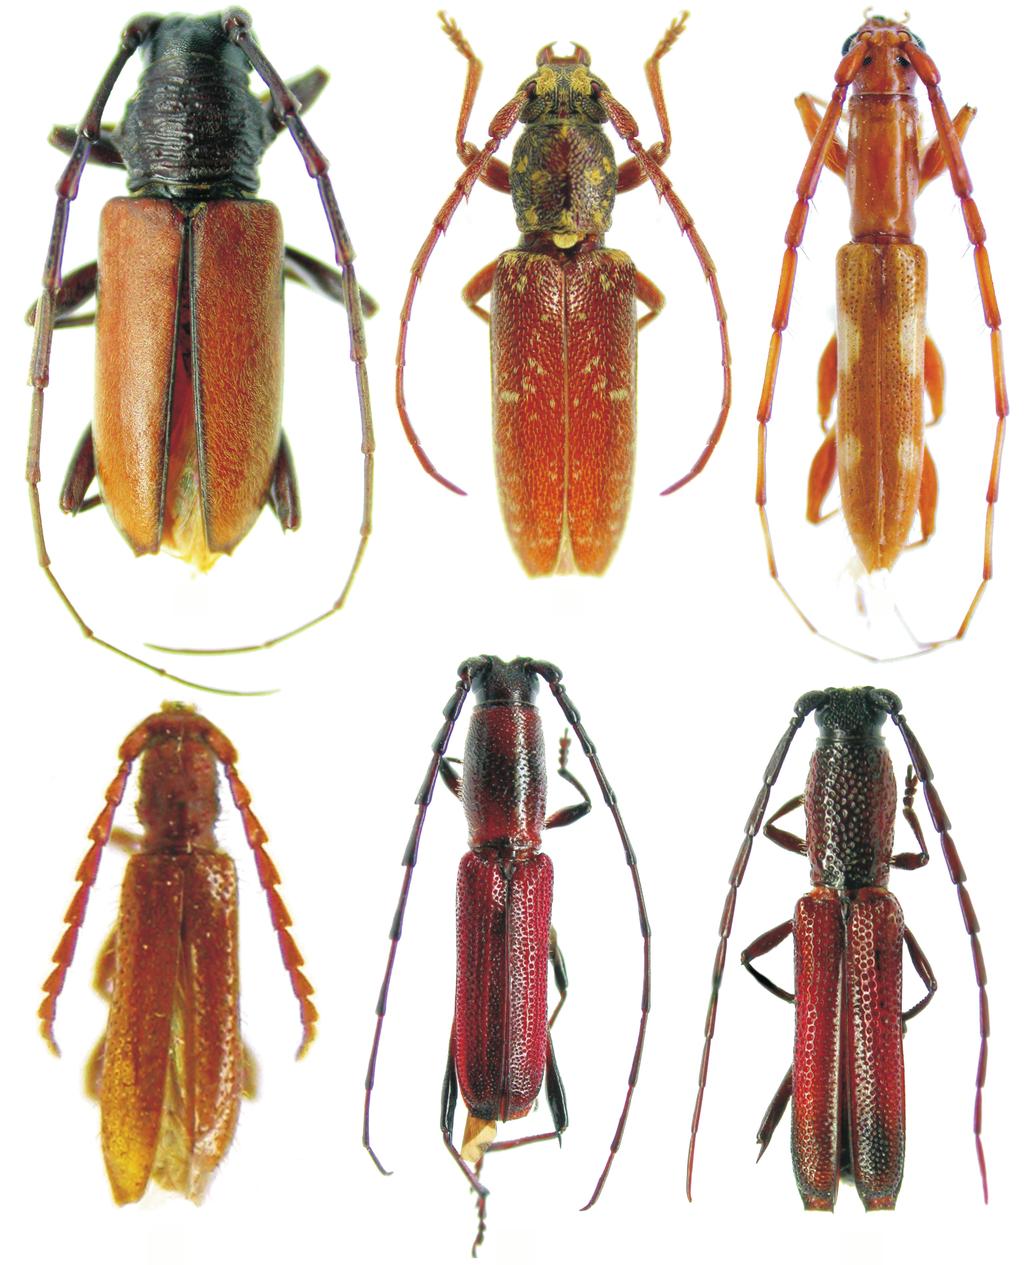 Martins & Galileo 568 1 4 2 5 3 6 Figs. 1-6. 1. Plocaederus dozieri sp. nov., holótipo macho, comprimento, 13,2 mm; 2. Anelaphus trinidadensis sp. nov., holótipo macho, comprimento, 9,5 mm; 3.